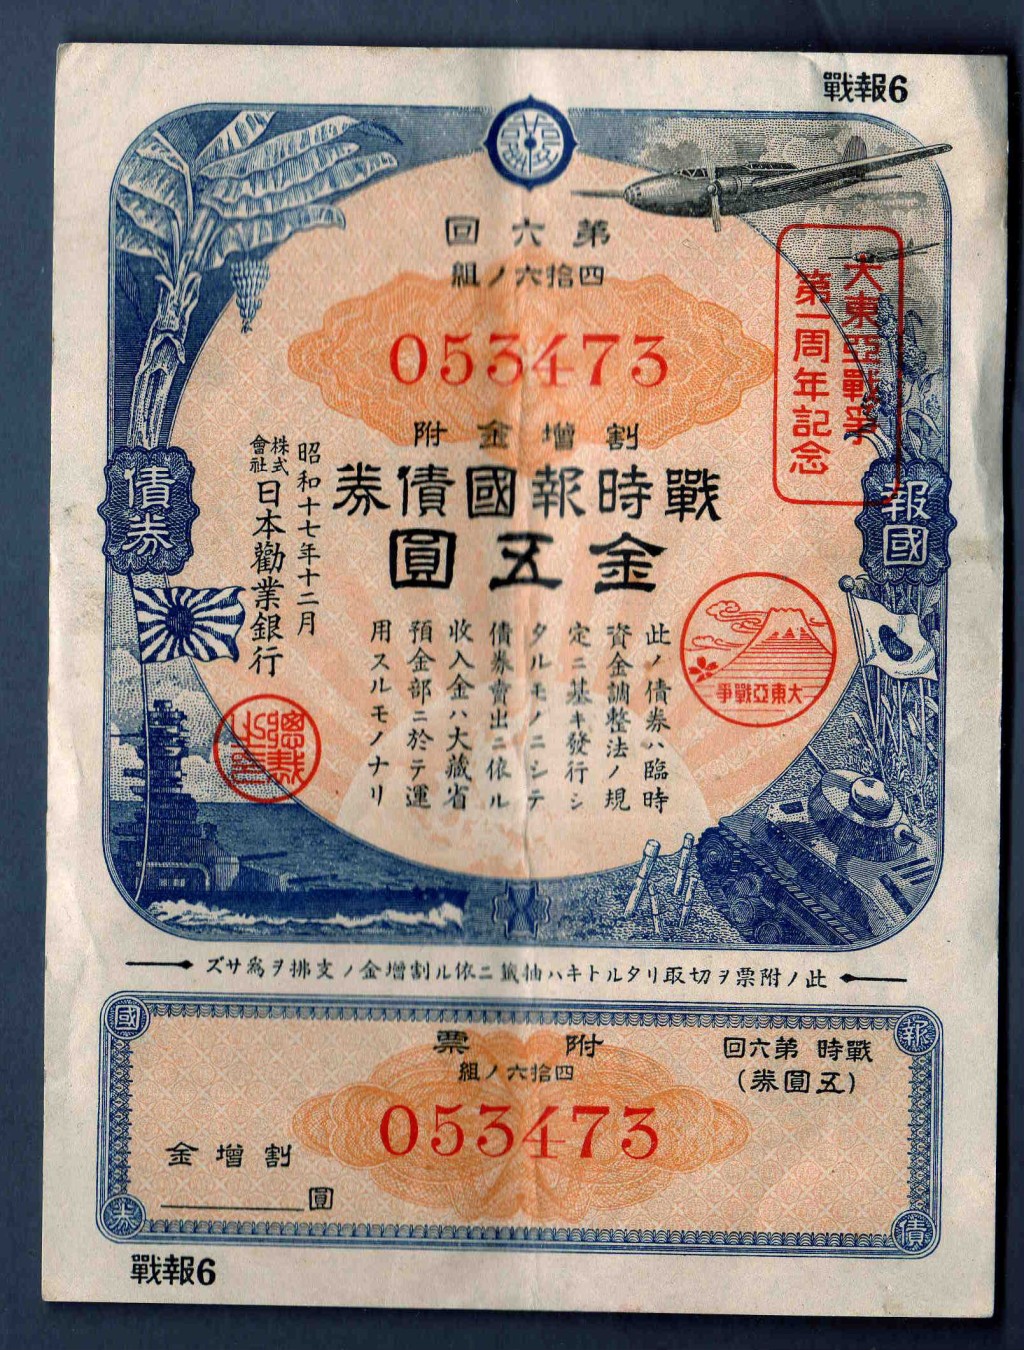 日本在二战时试图建立以日本为中心的「大东亚共荣圈」，将二战远东和太平洋战场的战争称为「大东亚战争」。图为日本劝业银行发行的「大东亚战争第一周年纪念」报国债券。